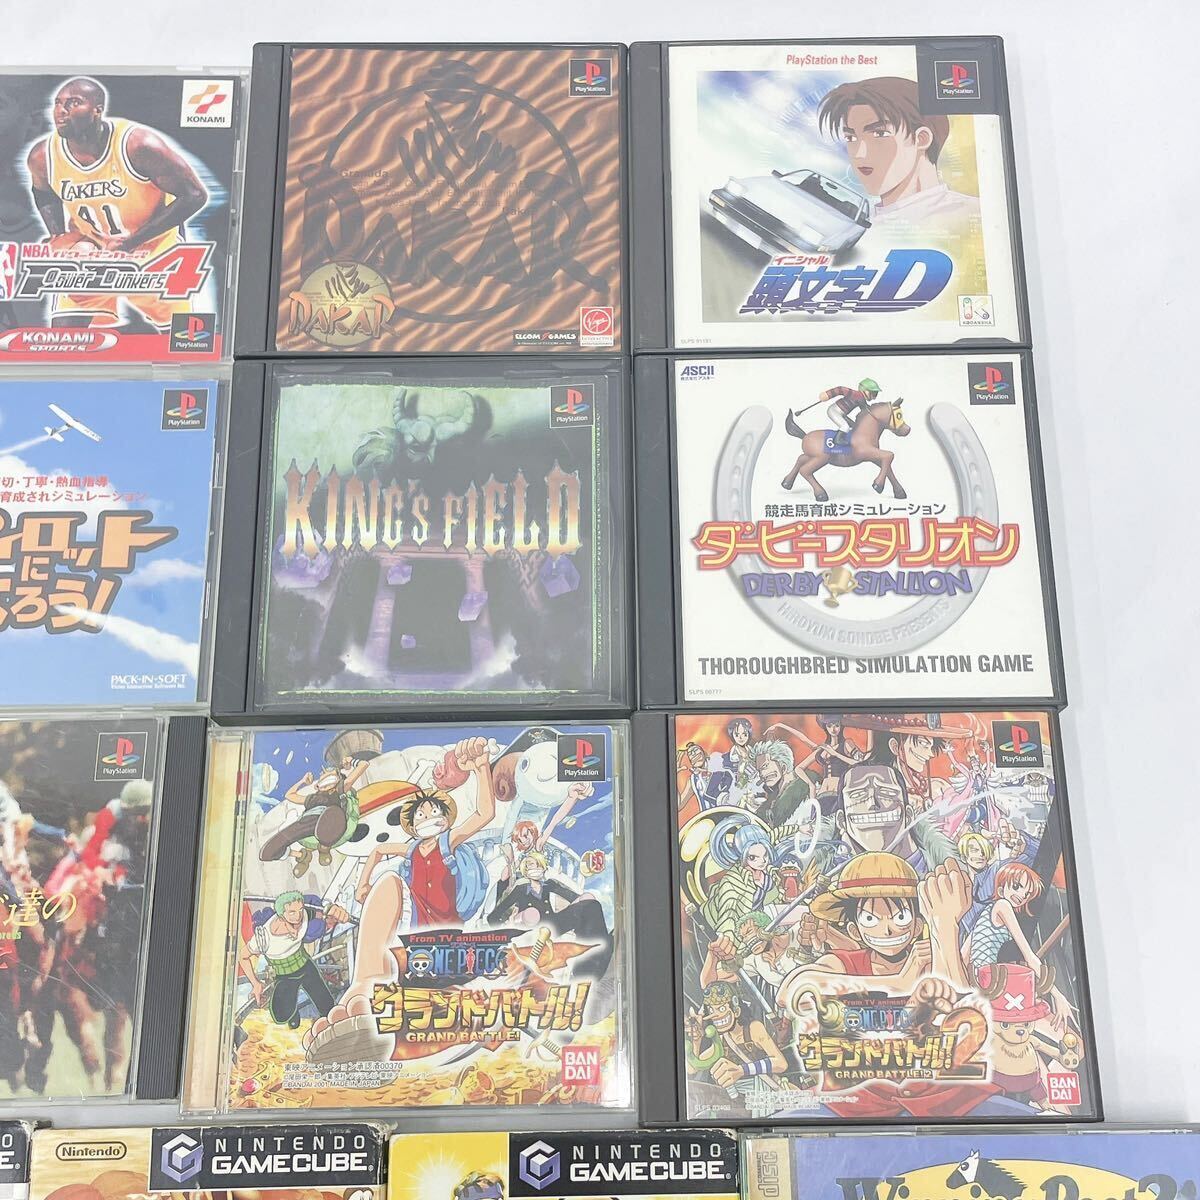  game soft together PlayStation PlayStation Super Famicom SFC Game Cube other Nintendo Konami other R shop 04250